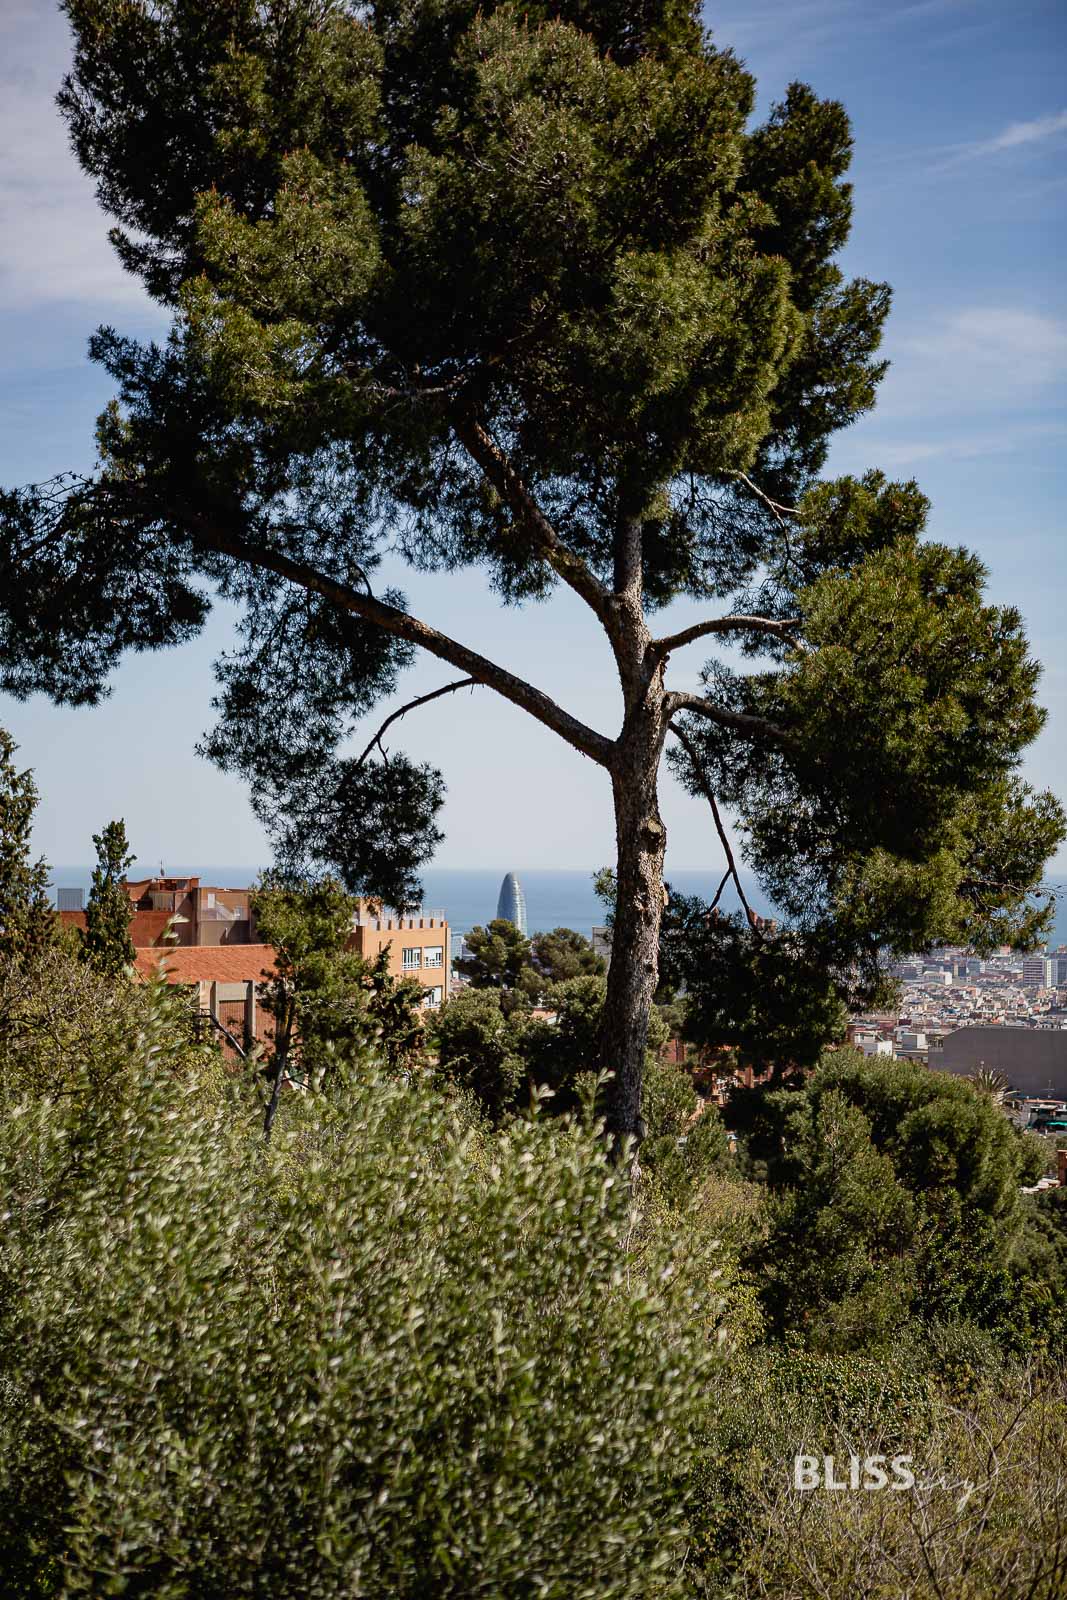 Gaudi Park in Barcelona - Park Güell - Sehenswürdigkeiten Barcelona - Gaudi Park Barcelona - Parc Guell - Sehenswürdigkeiten und Reisetipps - Eindrücke und Aussicht